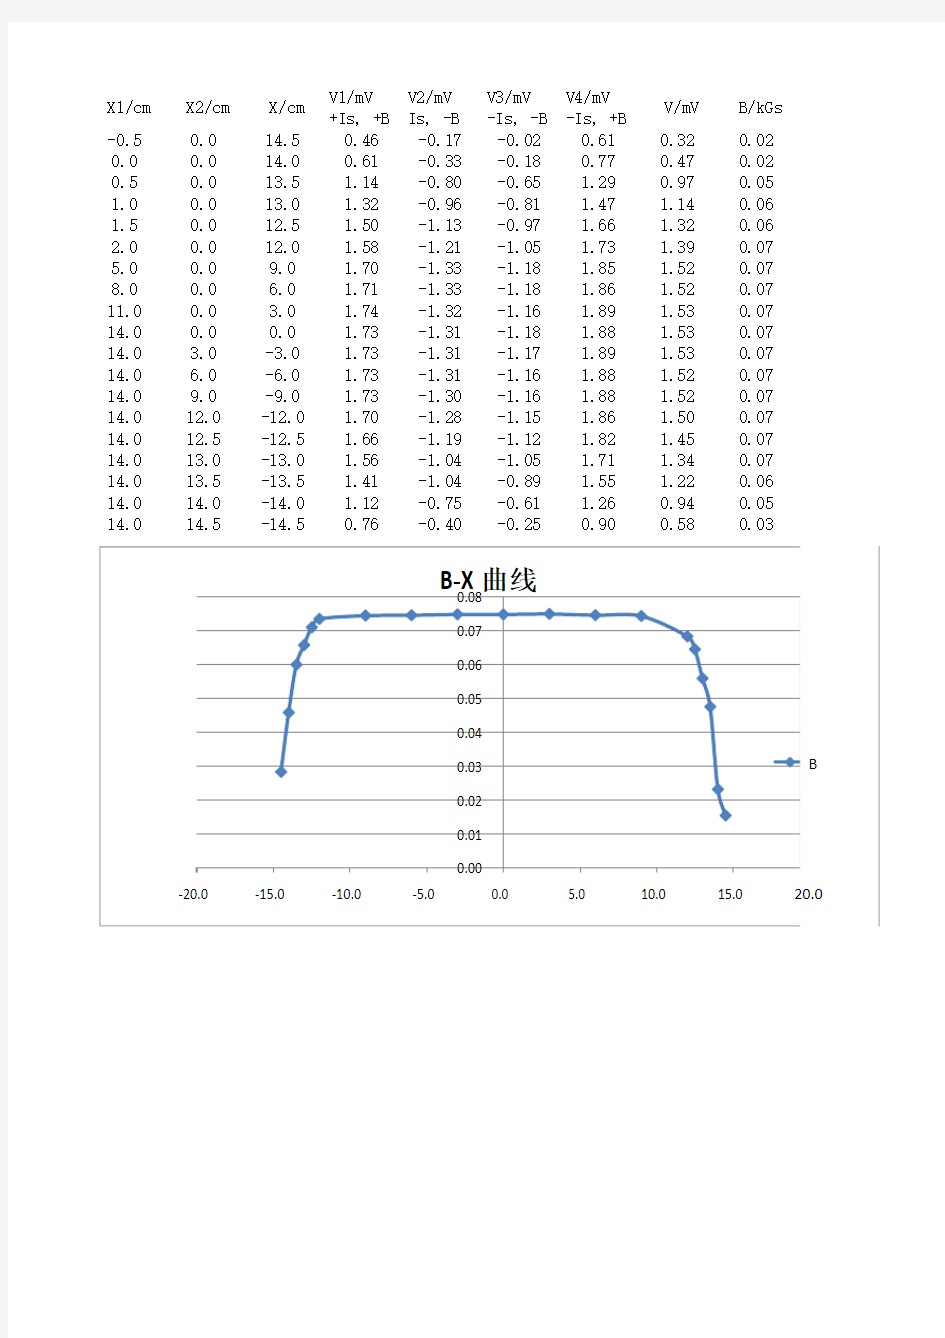 霍尔效应实验数据及B—X曲线